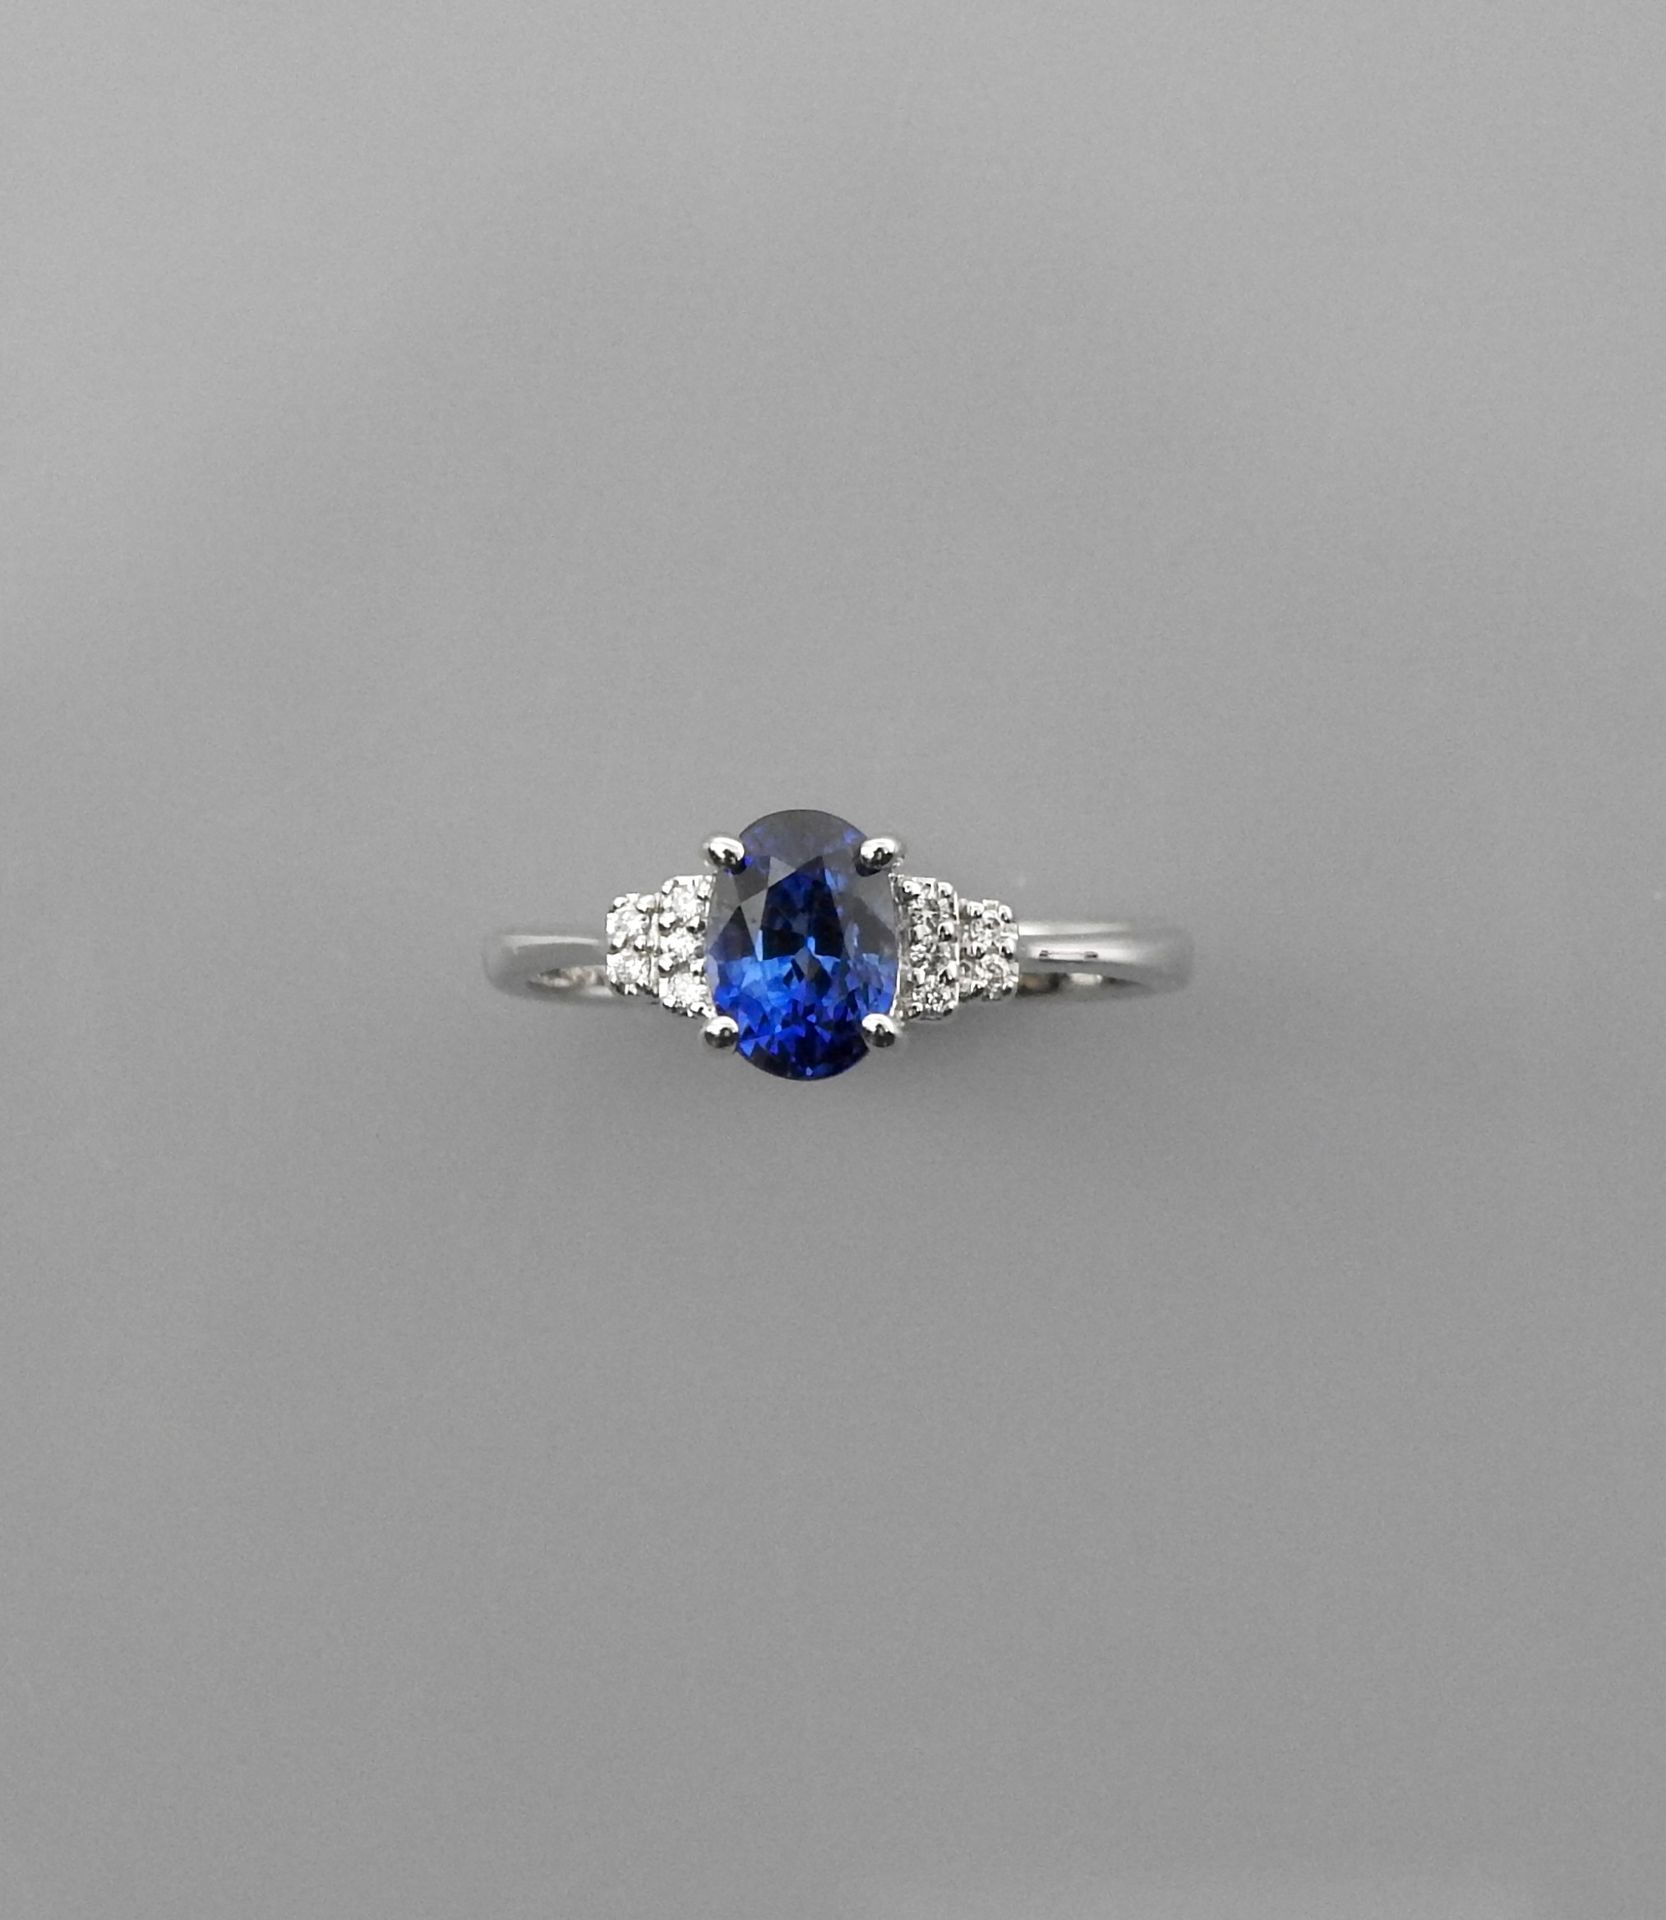 Null 白金戒指，750毫米，镶嵌一颗重1.65克拉的椭圆形蓝宝石，配以10颗钻石，11 x 7毫米，尺寸：54/55，重量：2.75克毛重。